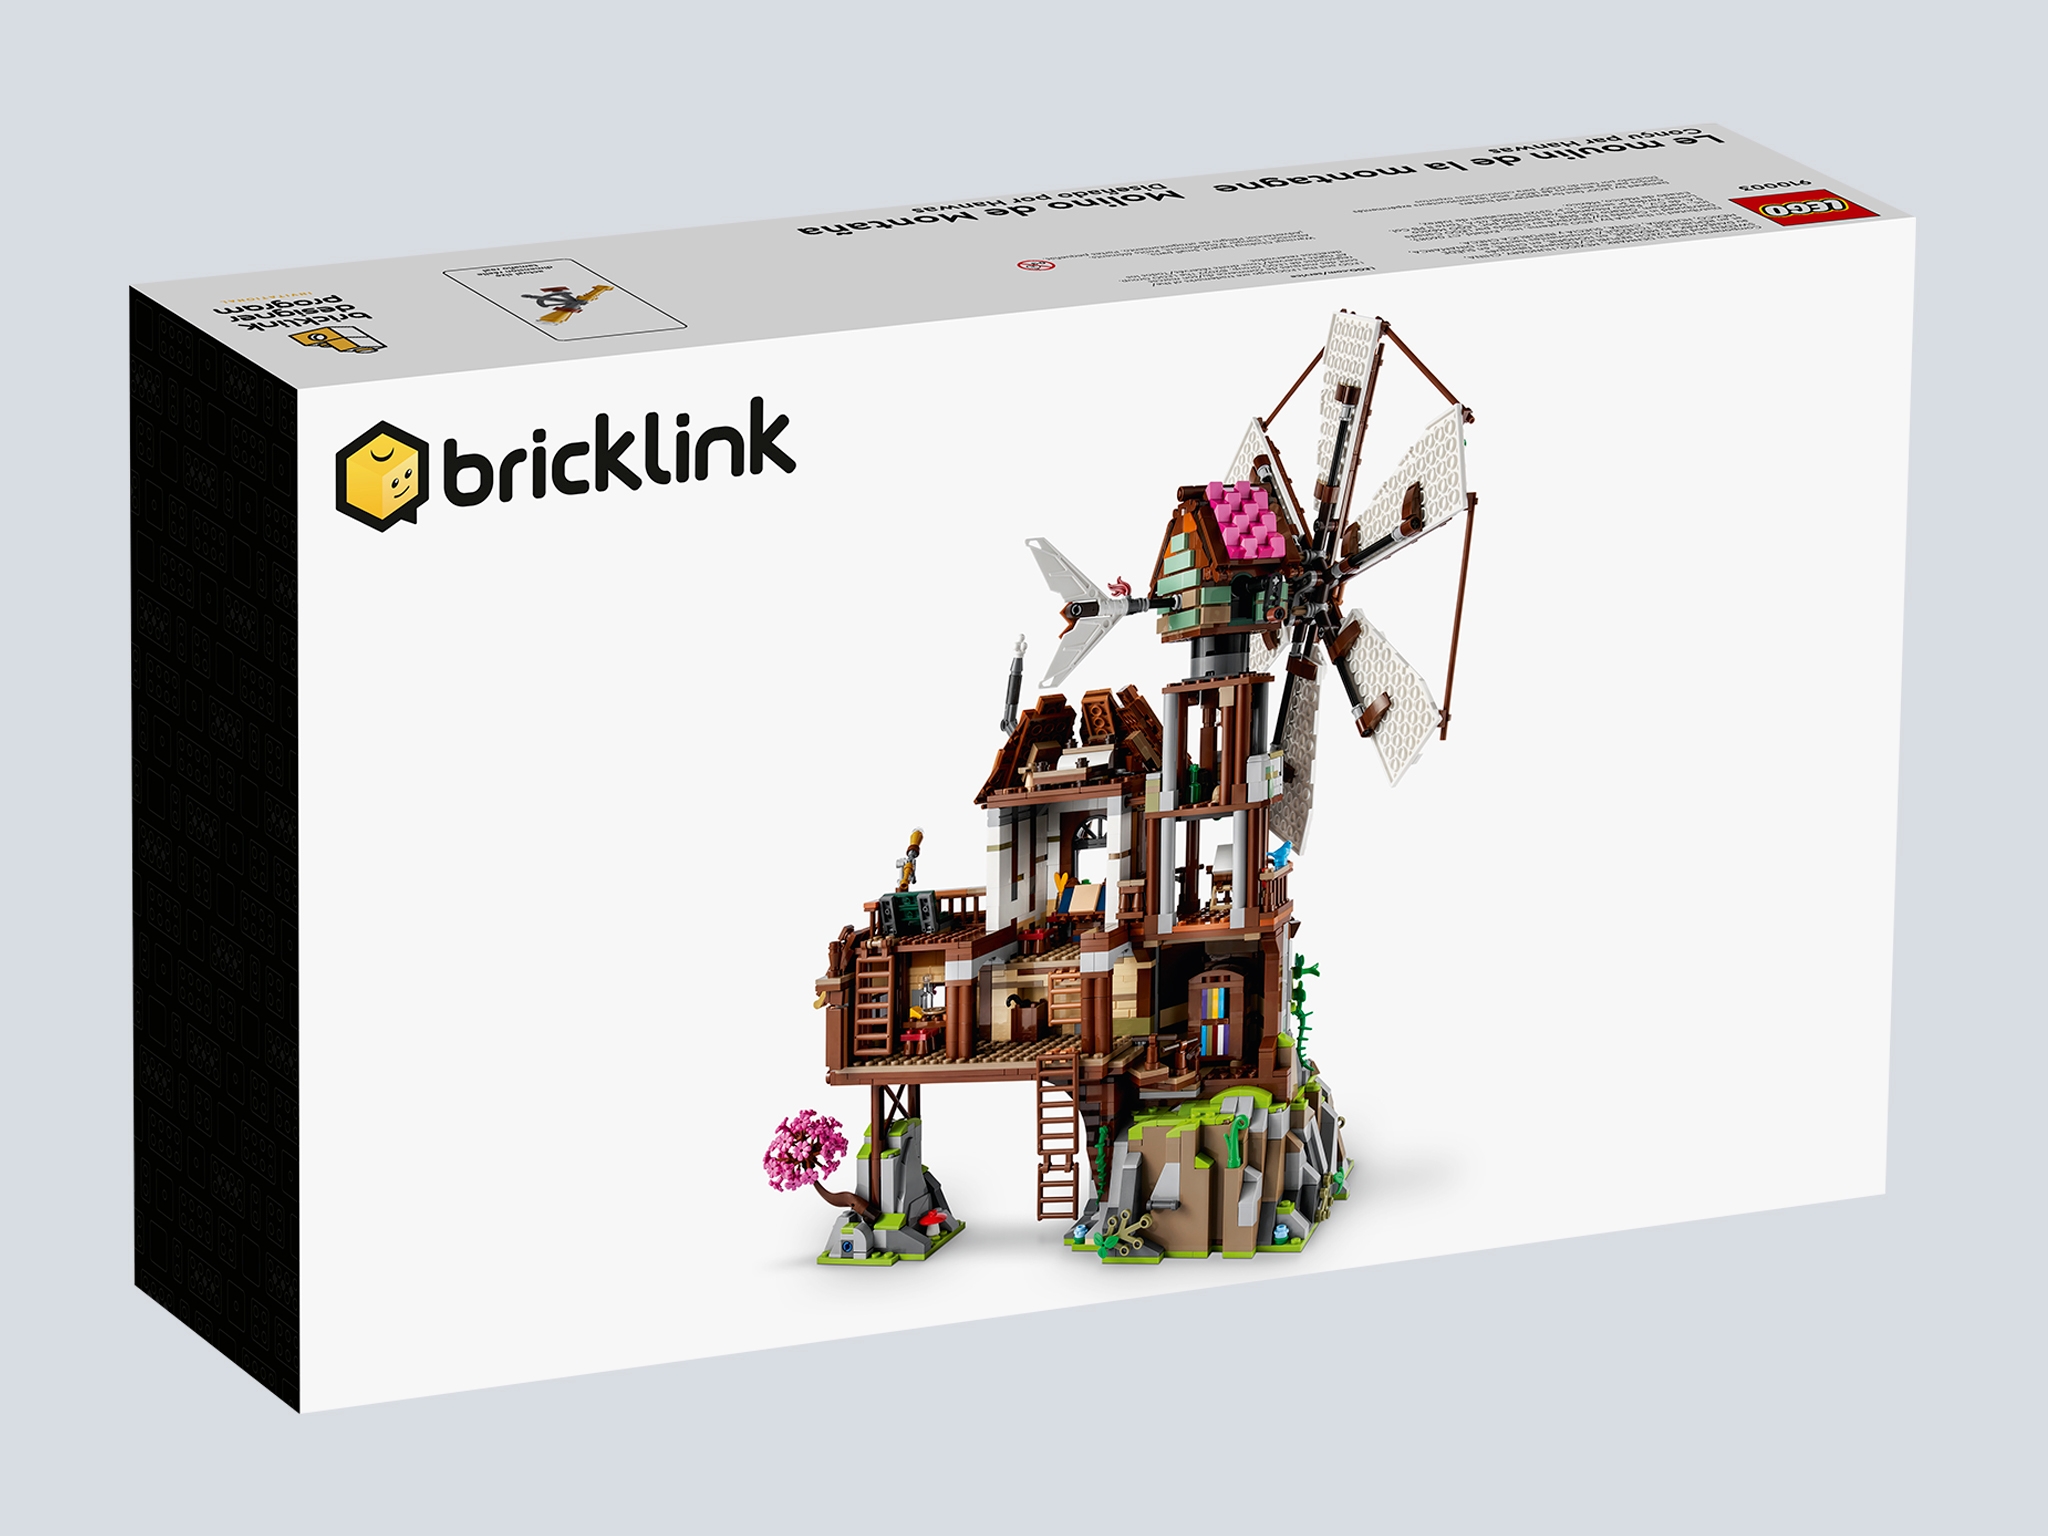 Mountain Windmill] [BrickLink]